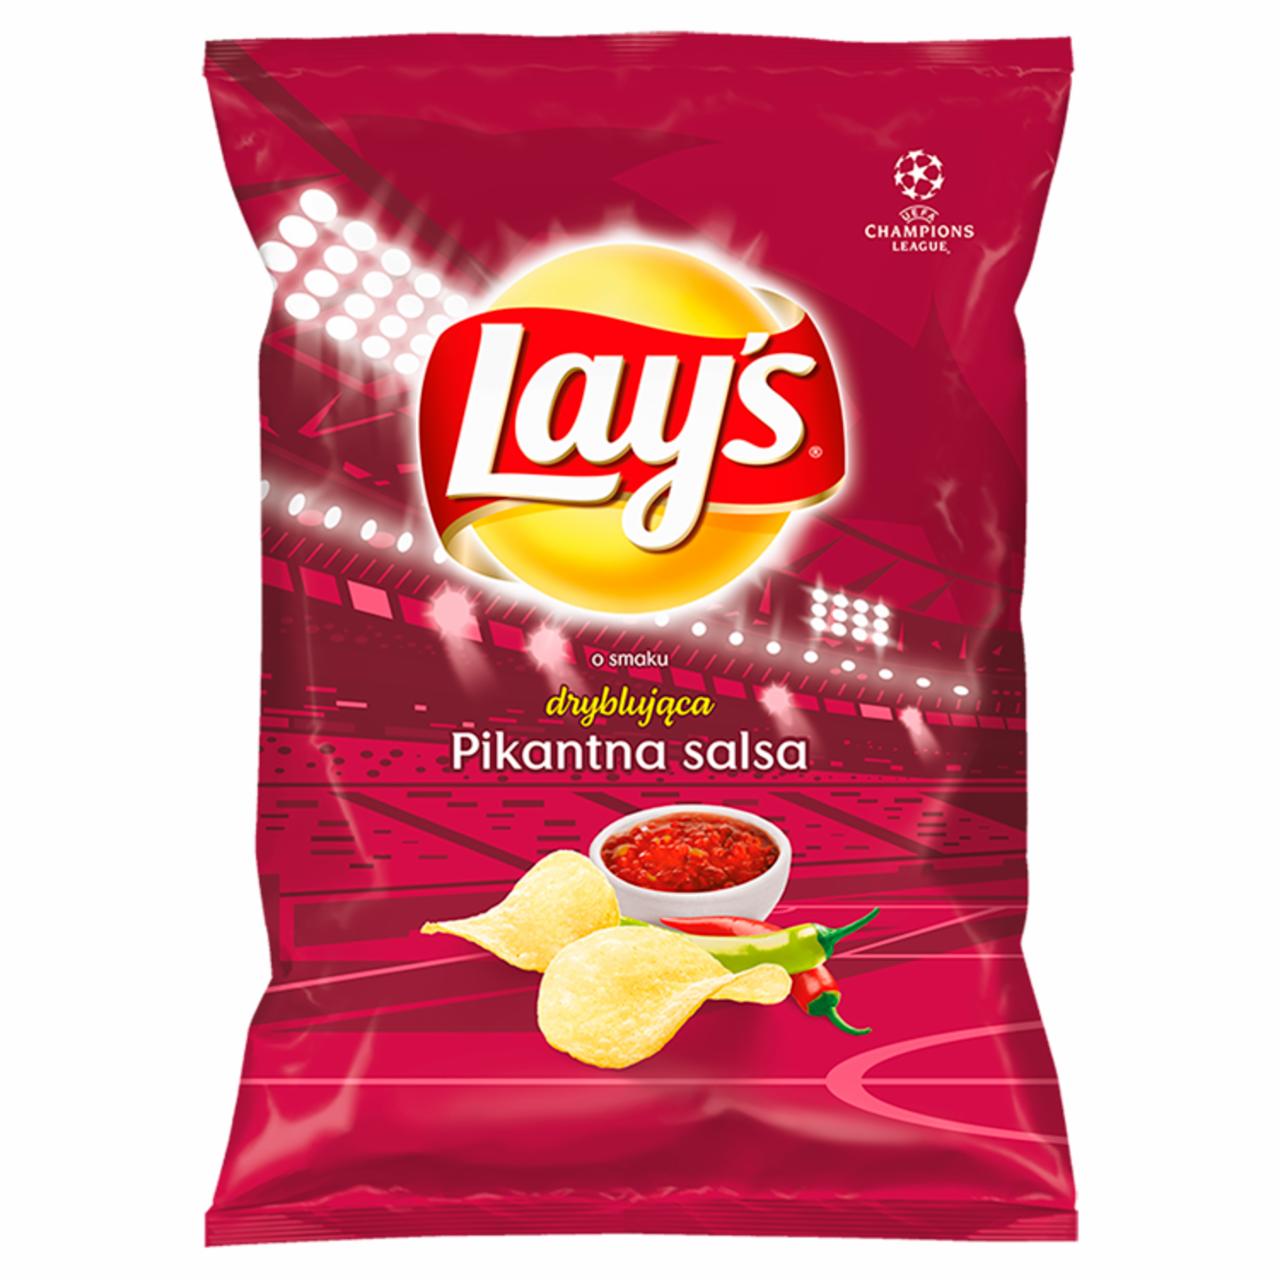 Zdjęcia - Lay's Chipsy ziemniaczane o smaku pikantnej salsy 40 g